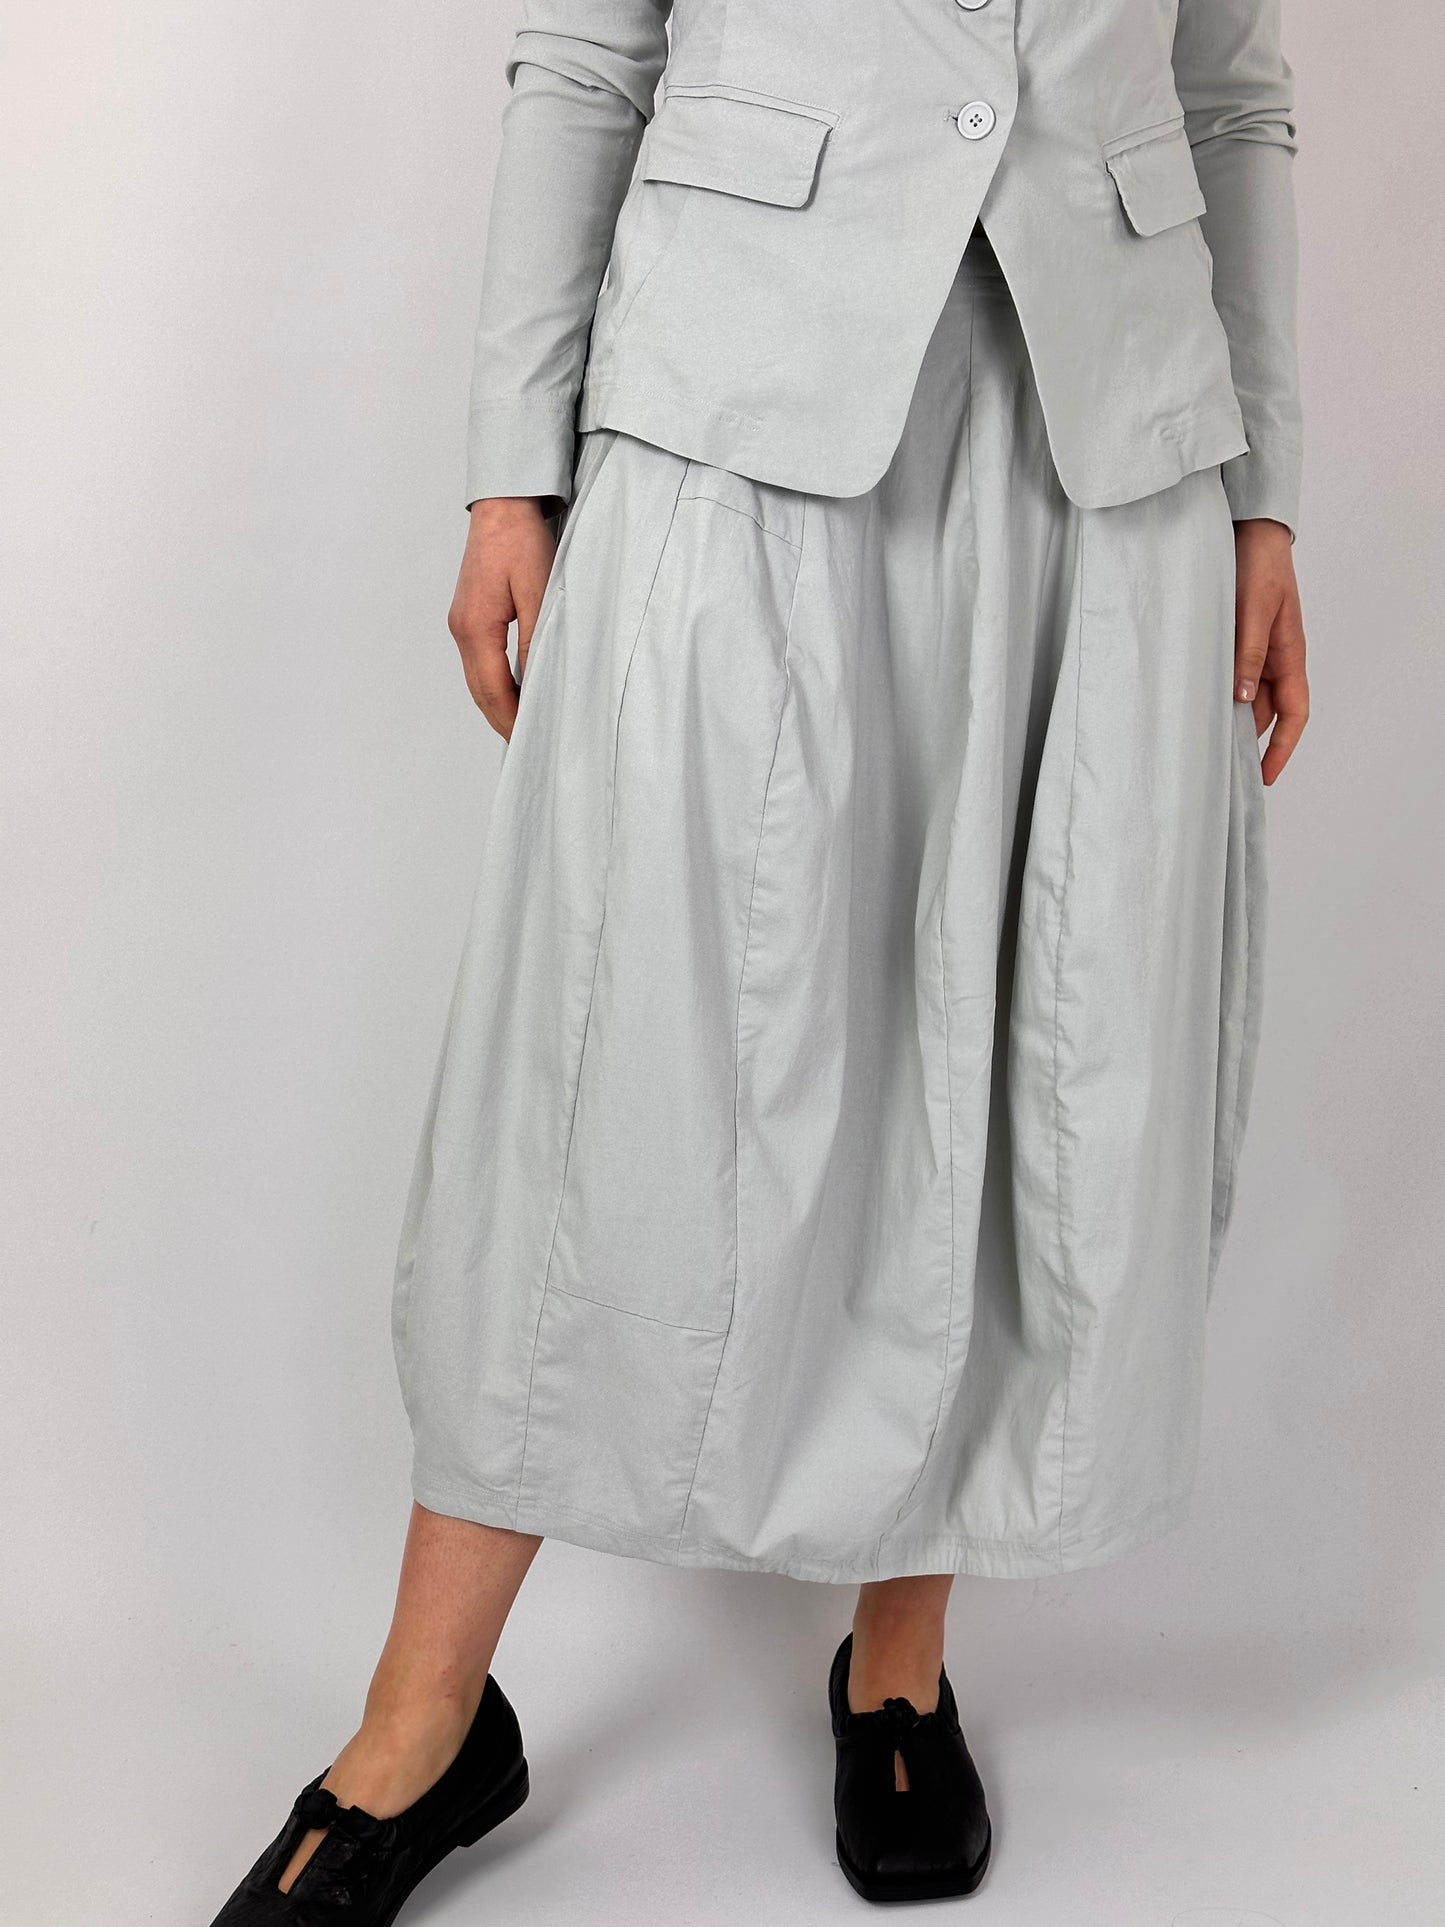 RBL 0331 Skirt Grey